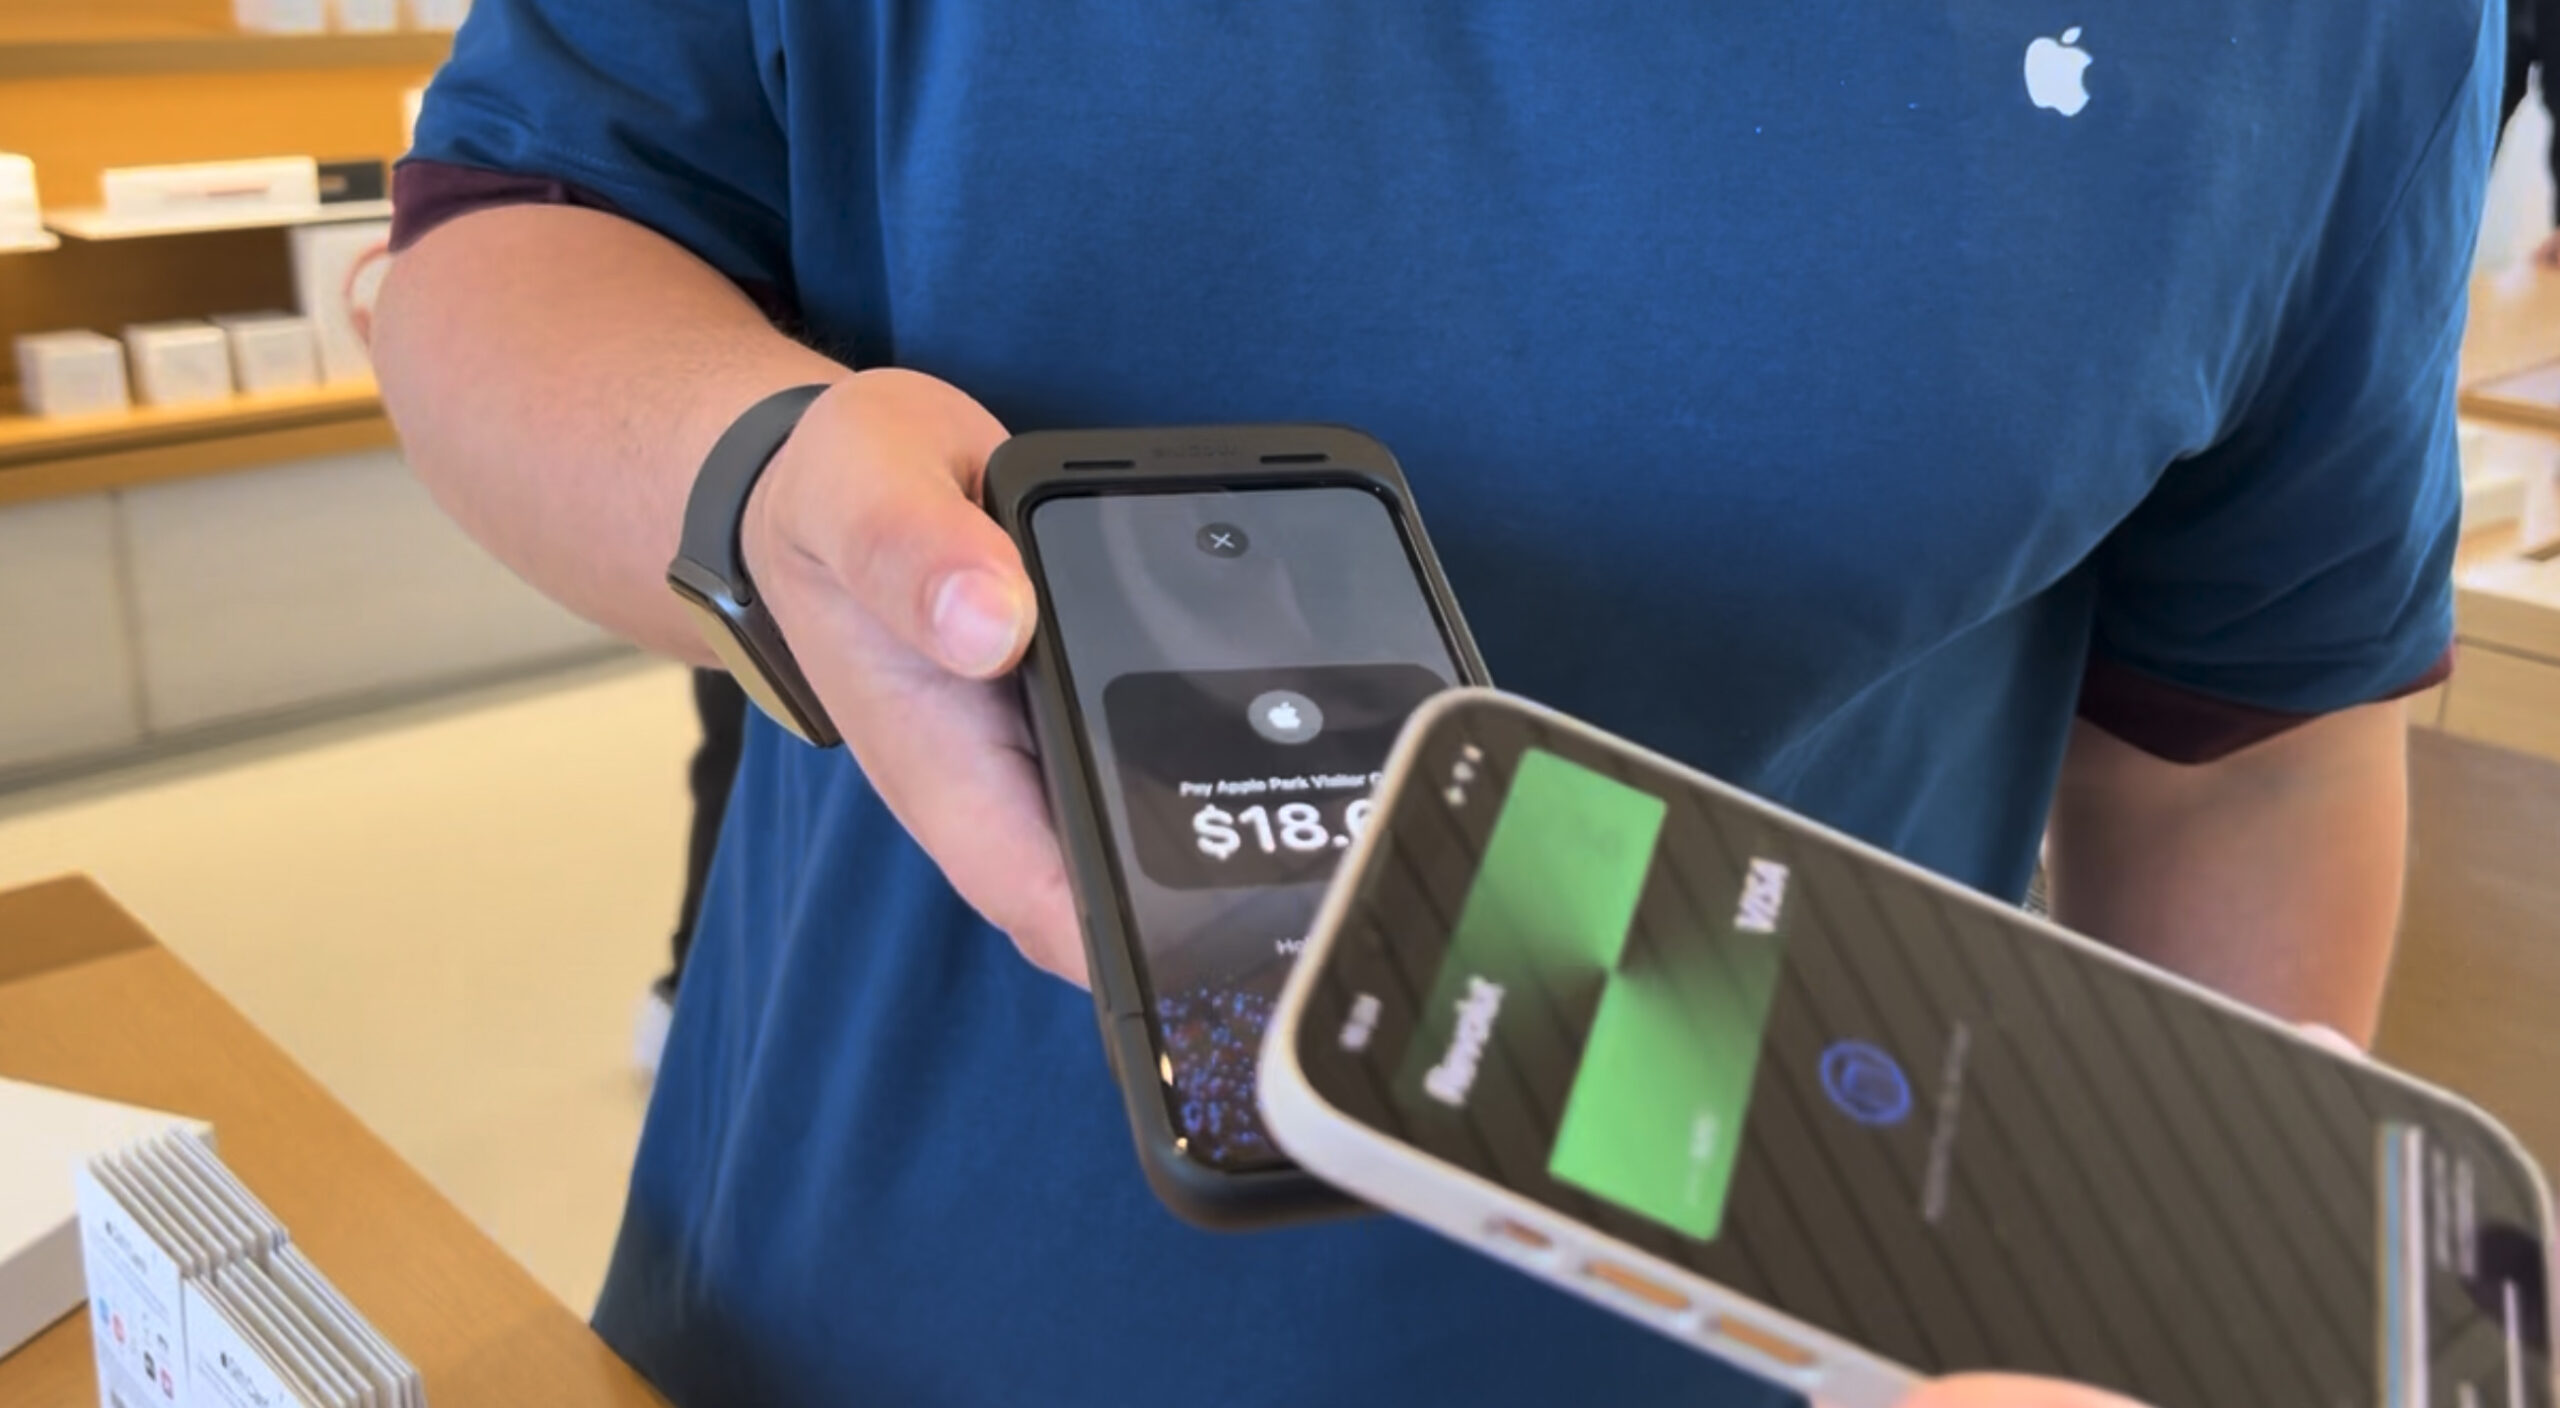 Apple Pay : payer avec son iPhone, comment ça marche ?